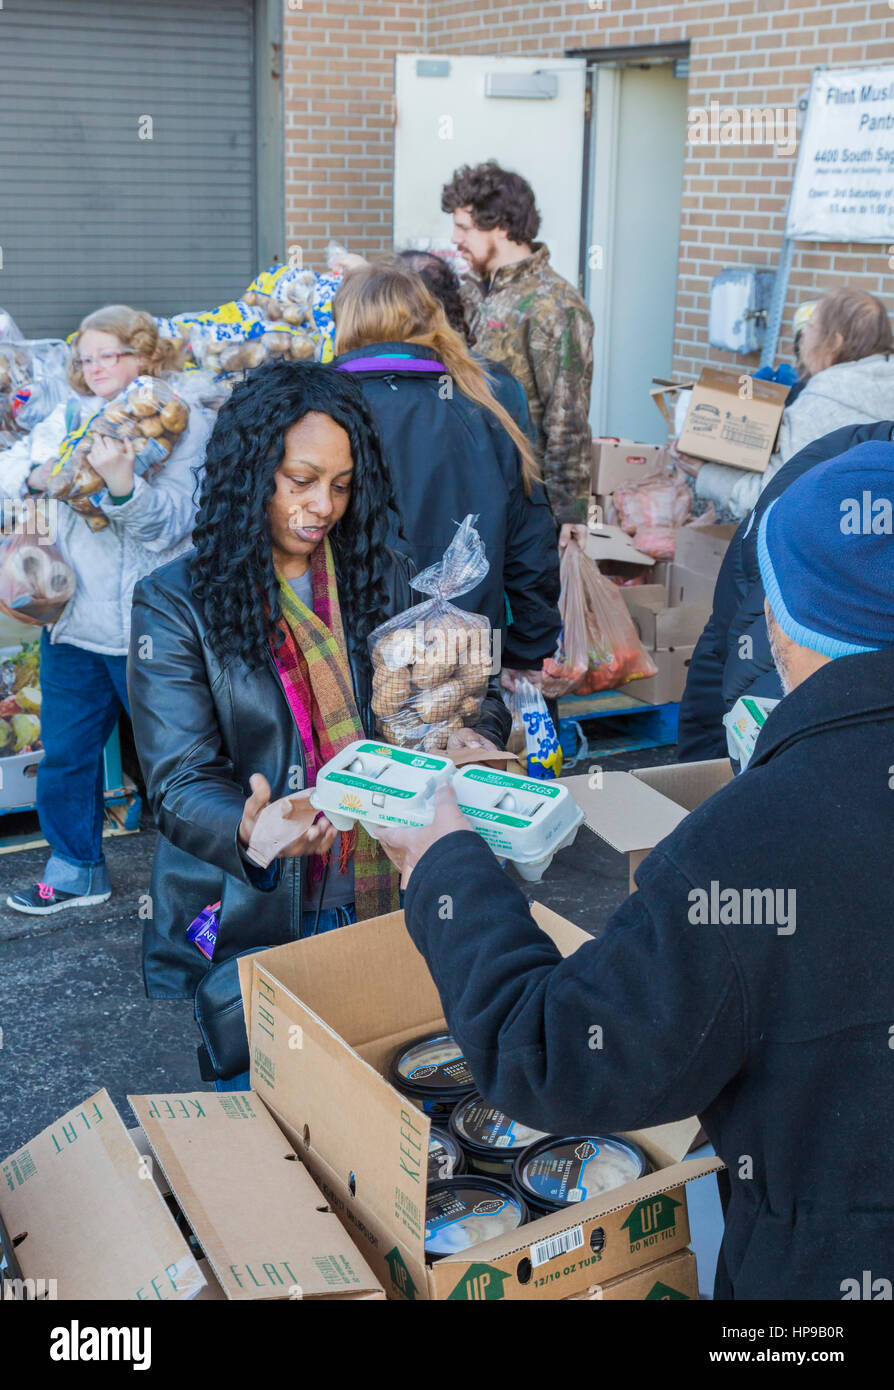 Selce, Michigan - il musulmano dispensa alimentare. Due volte al mese, membri di selce della comunità musulmana di distribuire gratuitamente il cibo a chi ne ha bisogno. Foto Stock